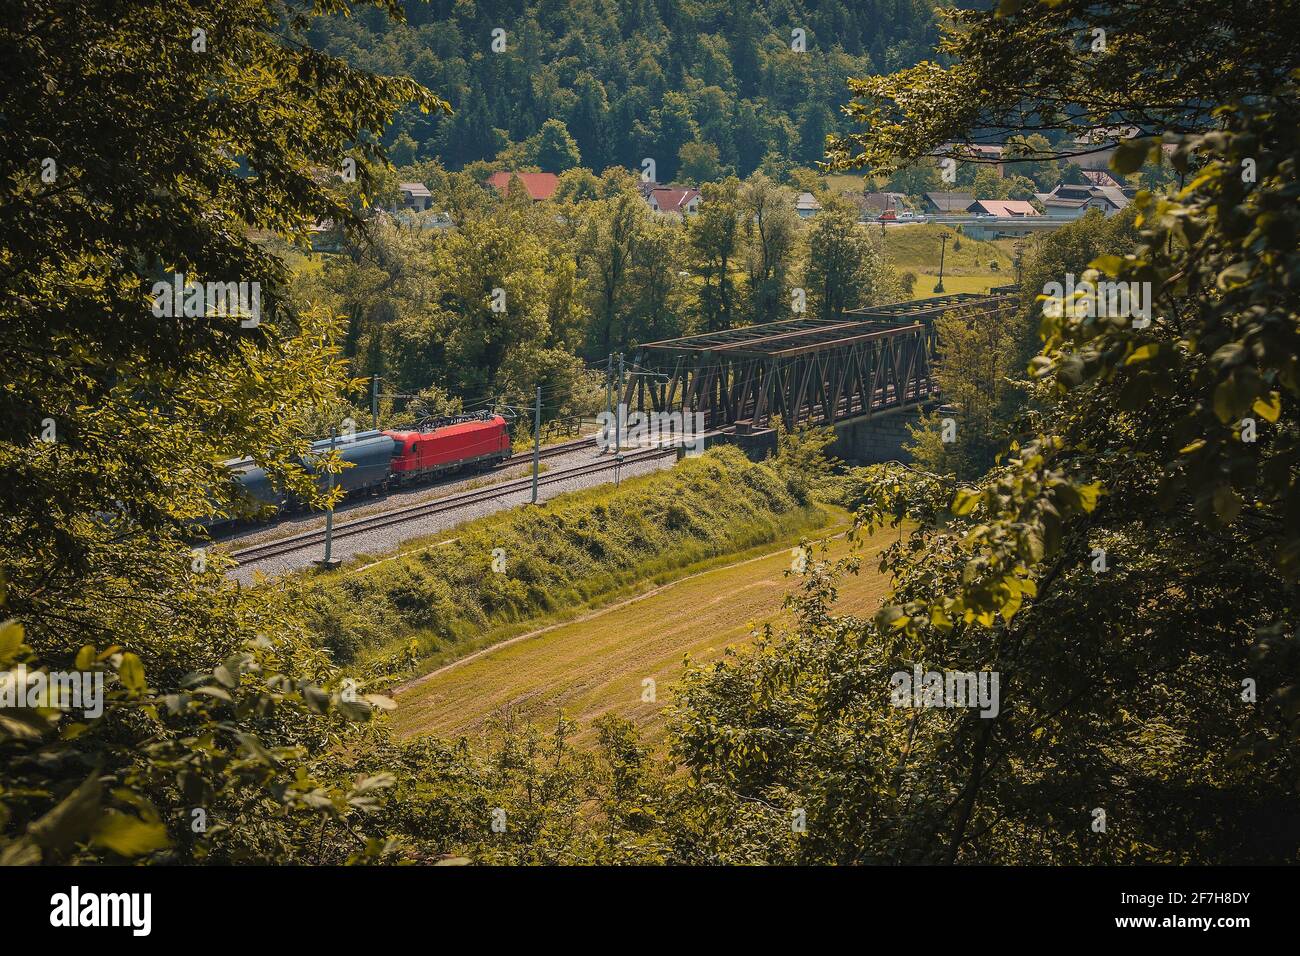 Der europäische Güterzug mit roter Lokomotive fährt auf einer zweigleisigen Eisenbahnlinie in Richtung einer Metallbrücke. Romantischer Blick durch ein Loch in Foli Stockfoto